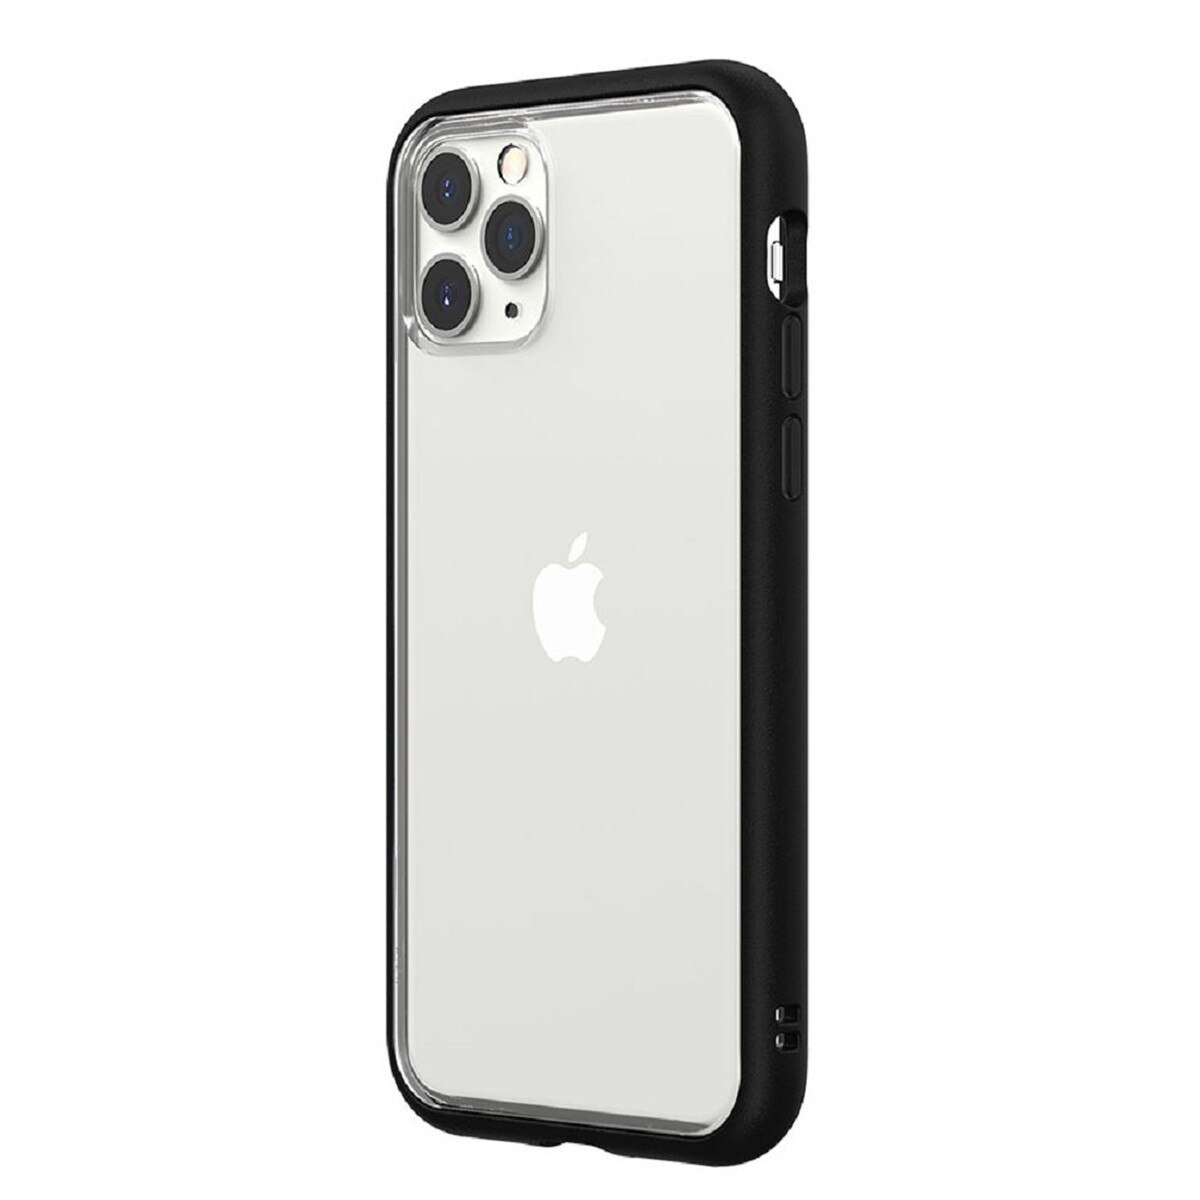 犀牛盾 iPhone 11 Pro Mod NX 手機殼 + 耐衝擊正面保護貼 黑